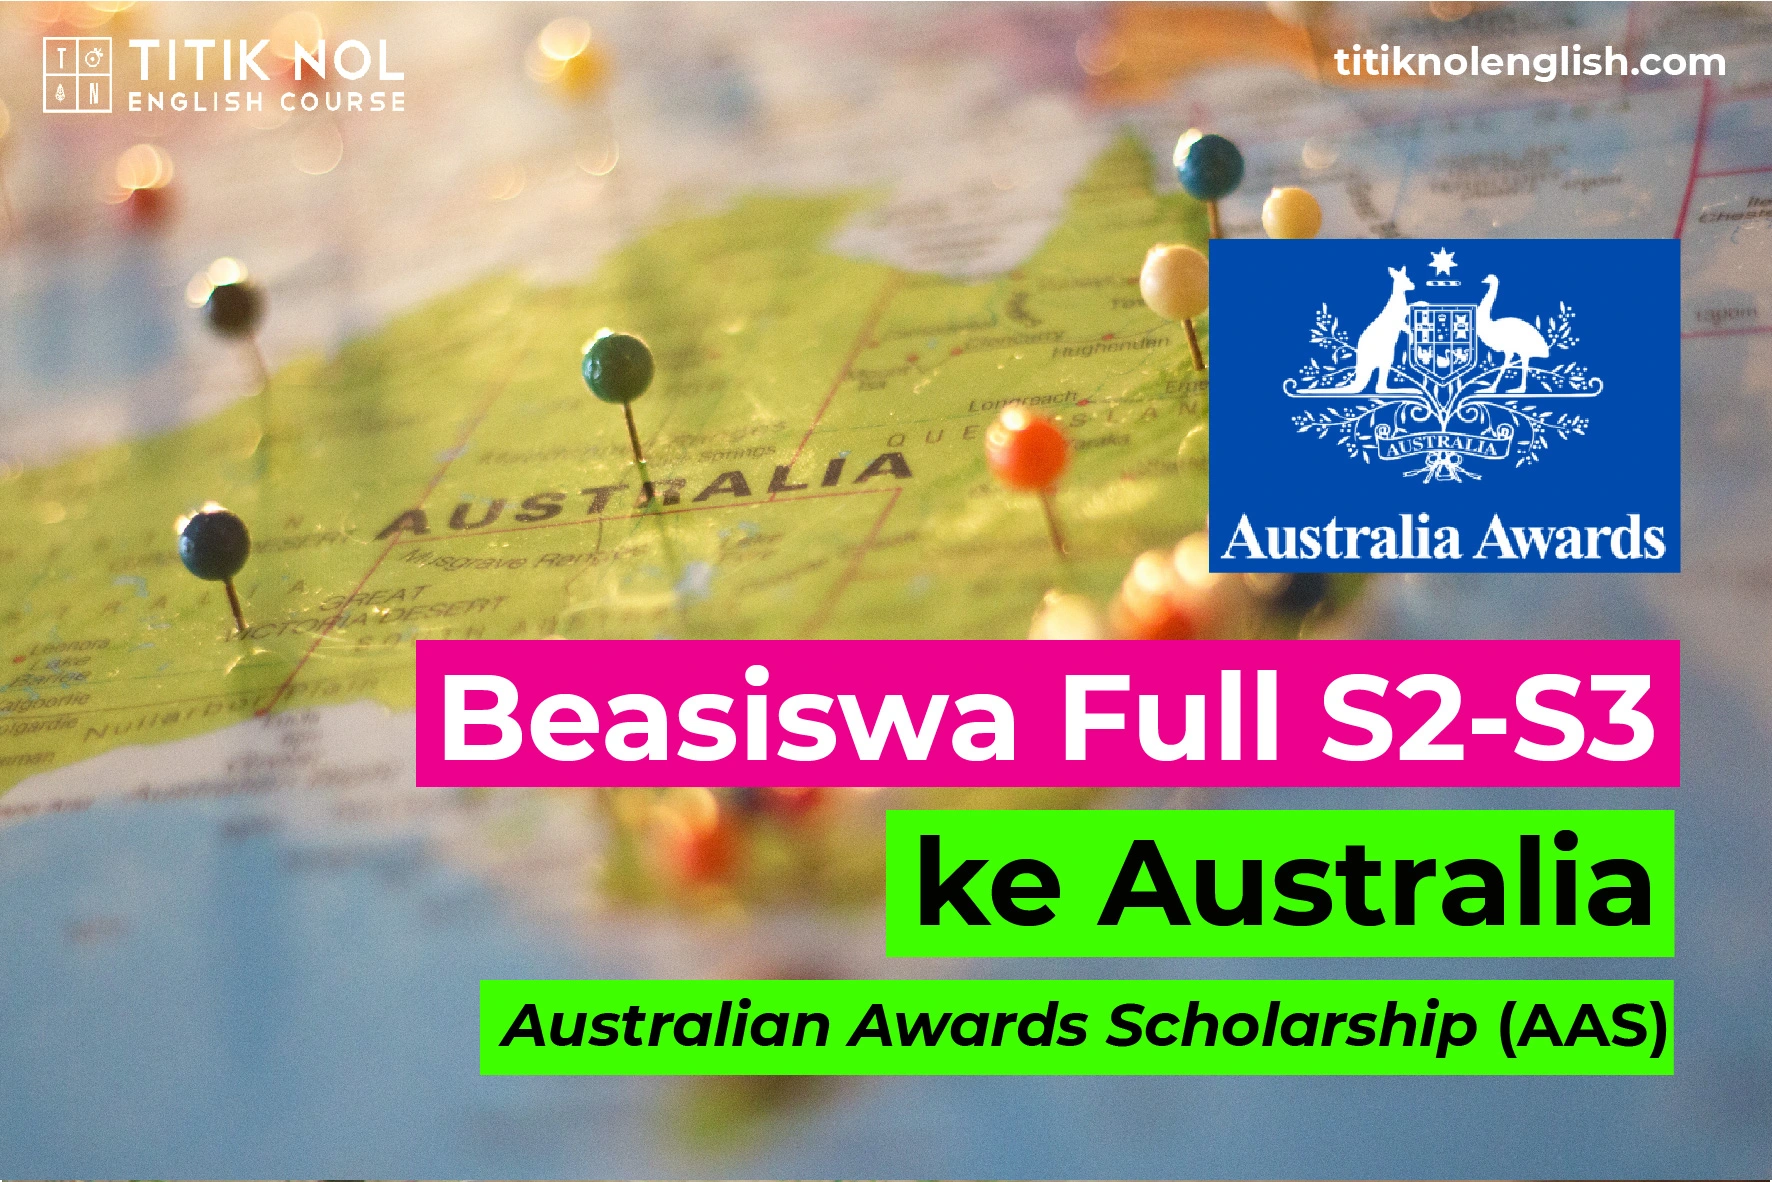 Beasiswa Full S2-S3 ke Australia